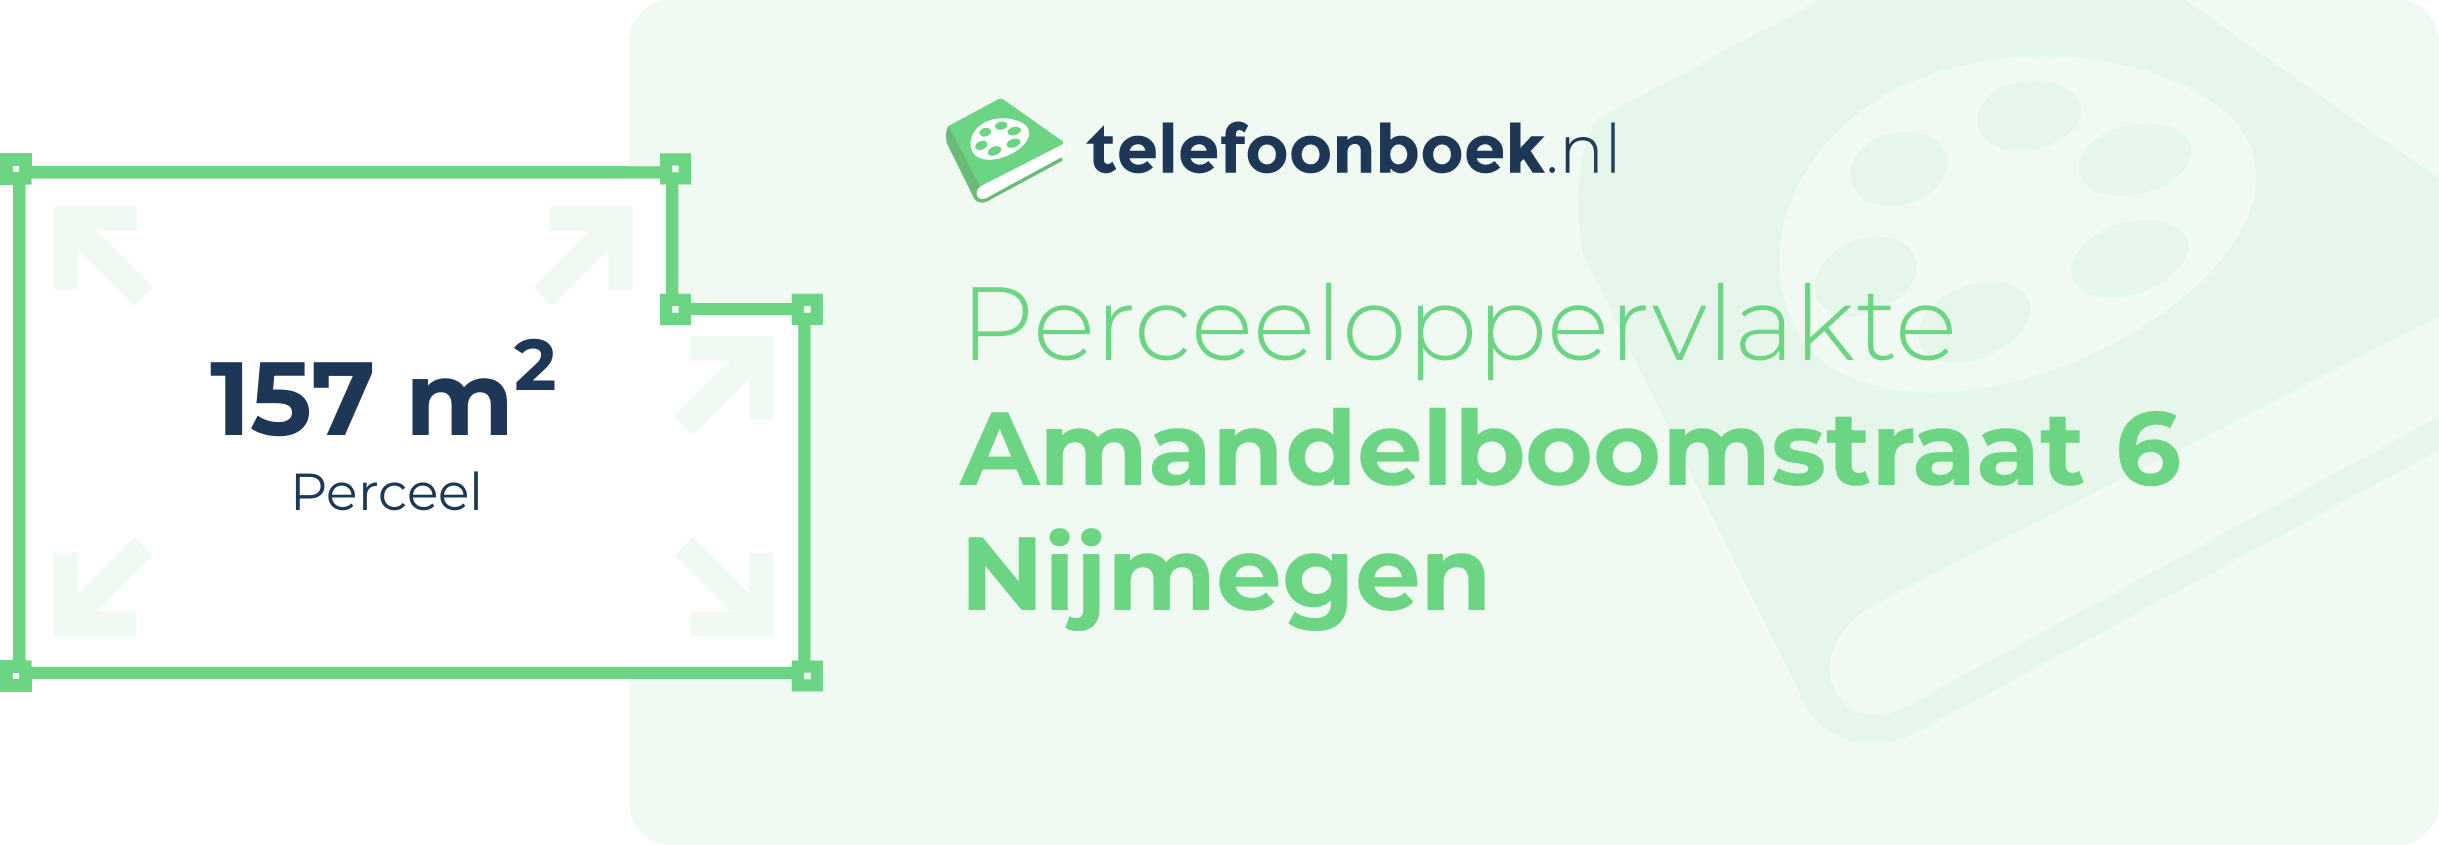 Perceeloppervlakte Amandelboomstraat 6 Nijmegen